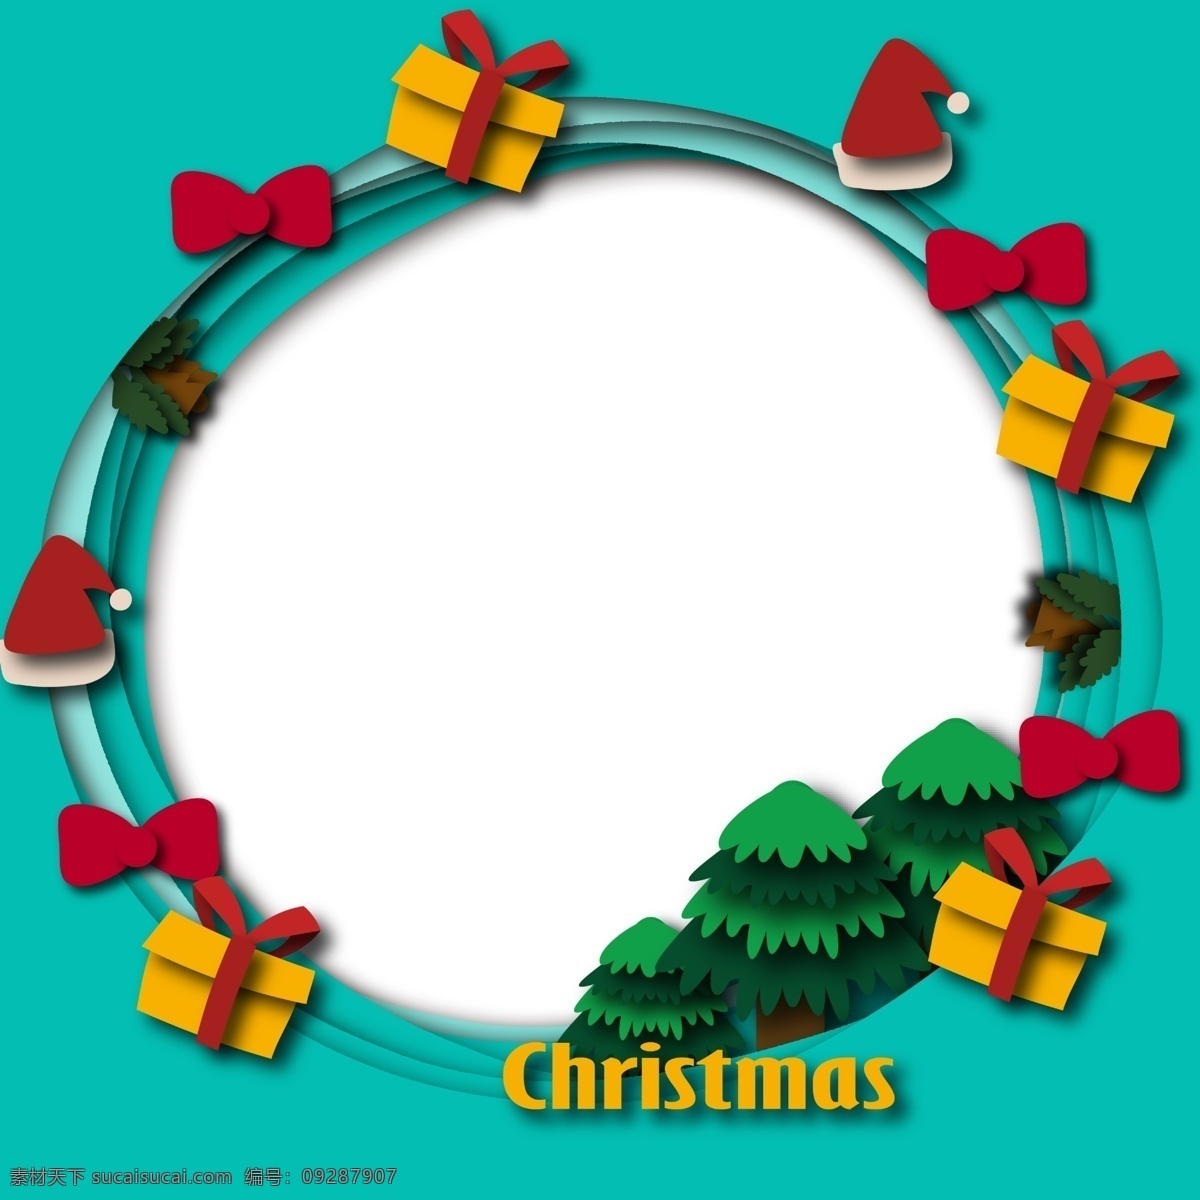 圣诞节 礼盒 边框 插画 手绘 黄色 红色的蝴蝶结 绿色 圣诞树 漂亮的边框